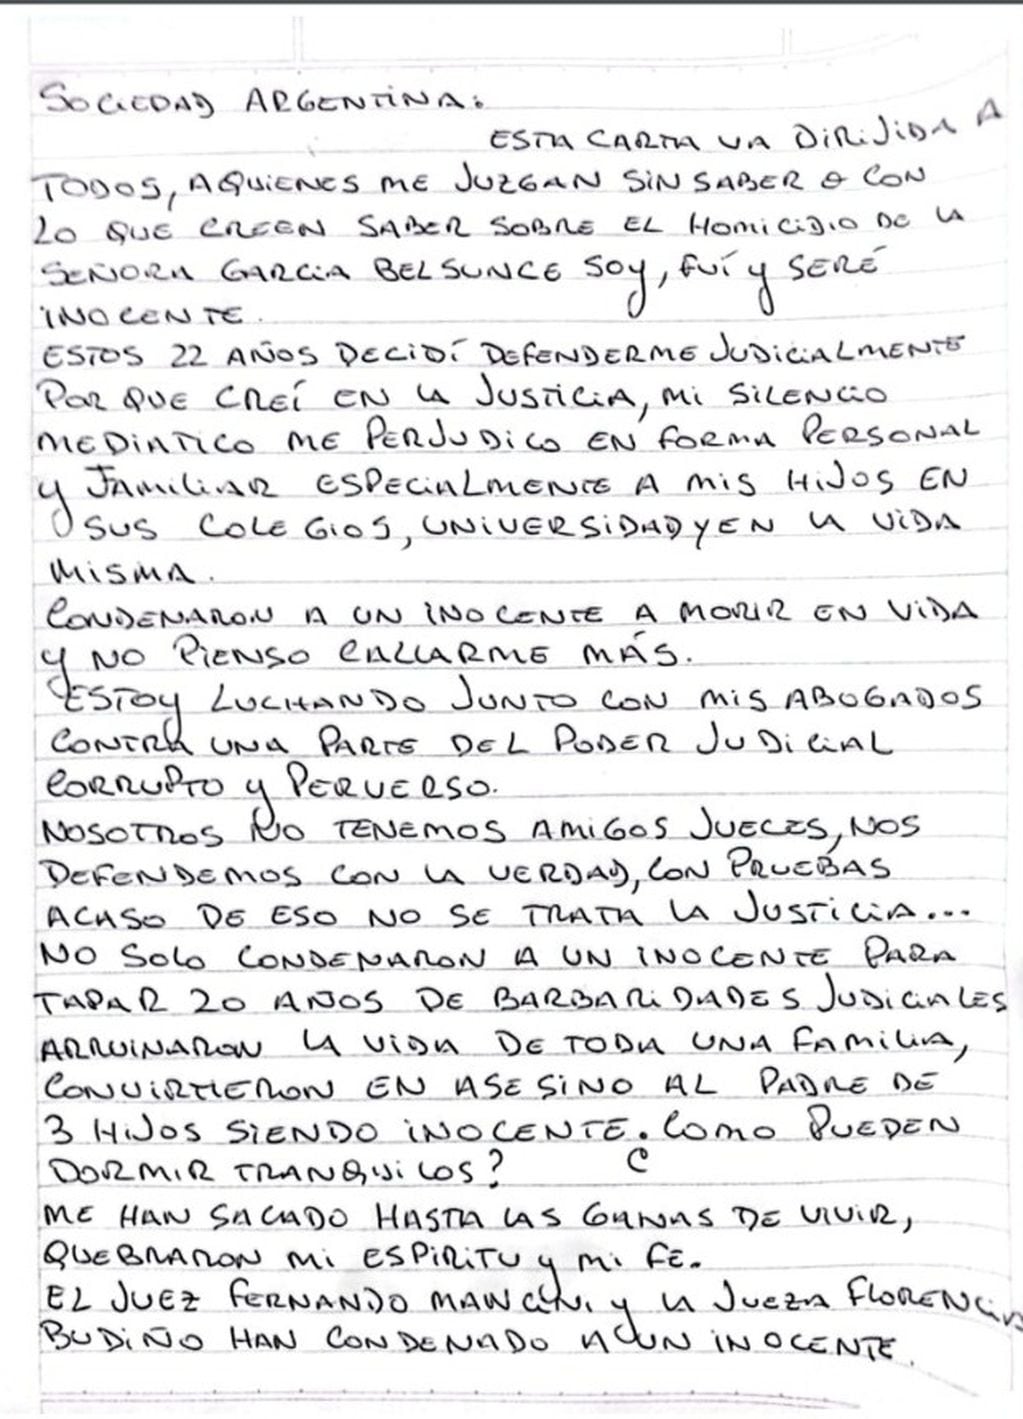 La primera parte de la carta de Nicolás Pachelo dirigida a la sociedad argentina. (Foto: Twitter)